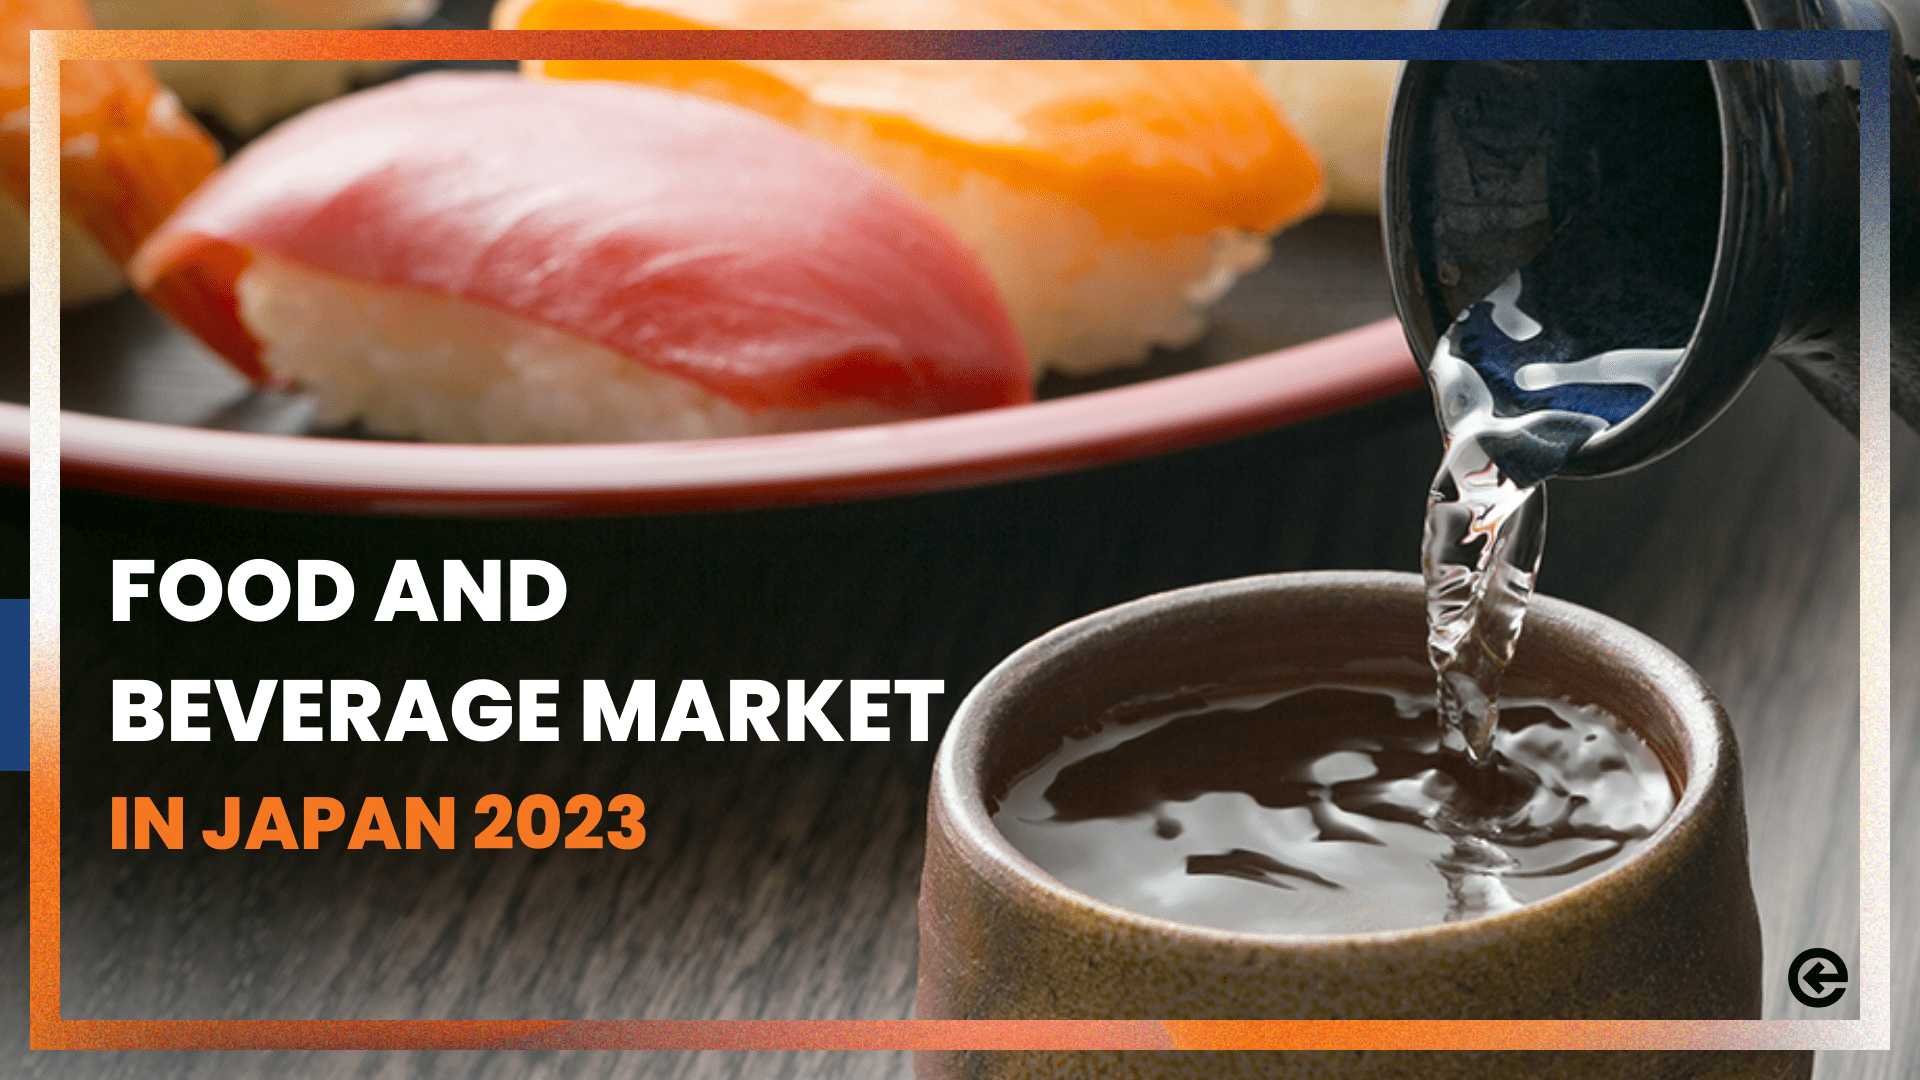 ¿Qué tendencias presenta el mercado japonés de alimentos y bebidas en 2023?